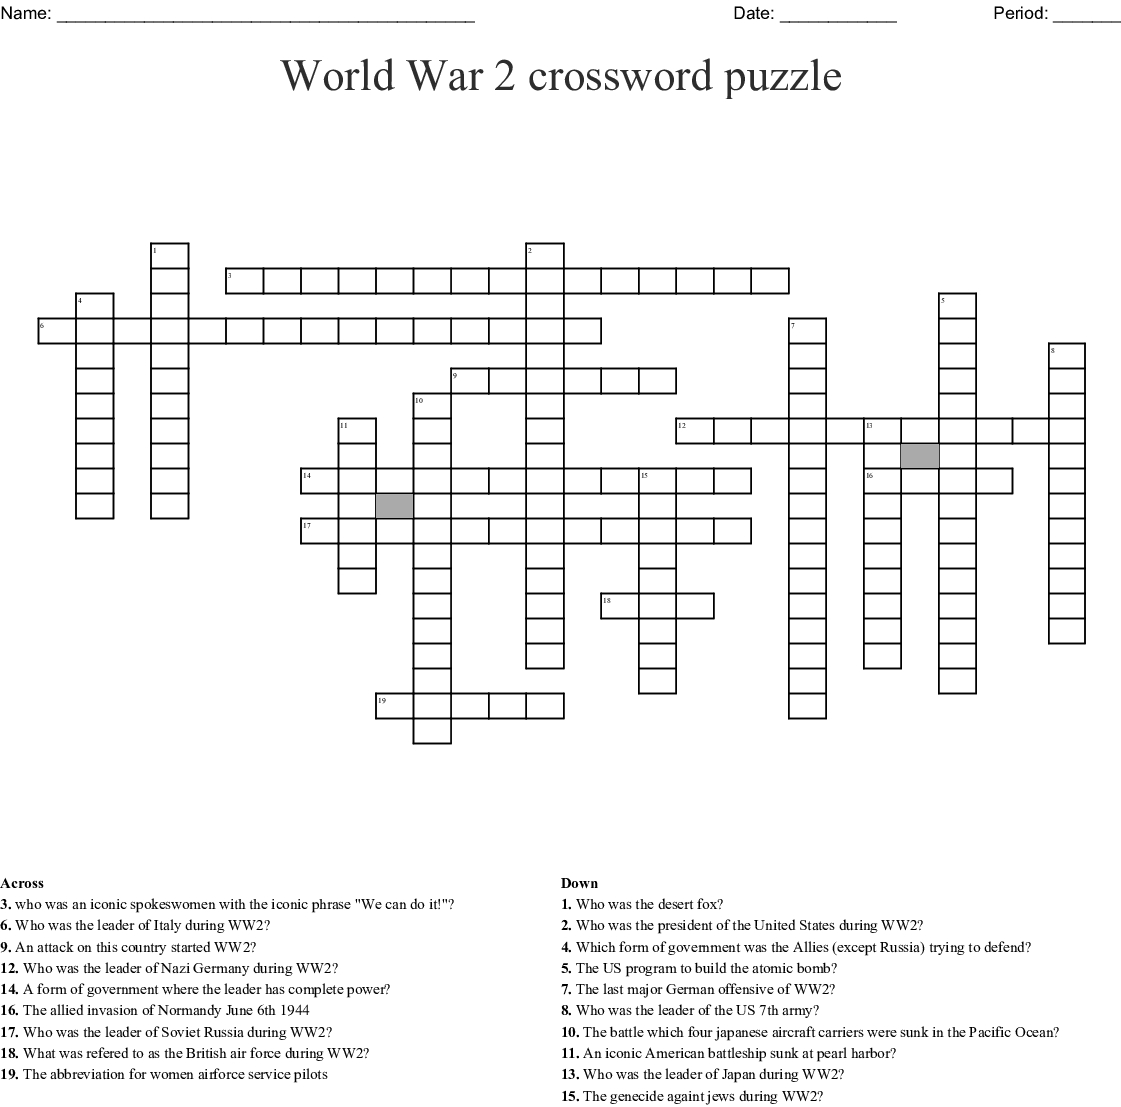 World War 2 Crossword Puzzle Crossword - Wordmint - Wwii Crossword Puzzle Printable